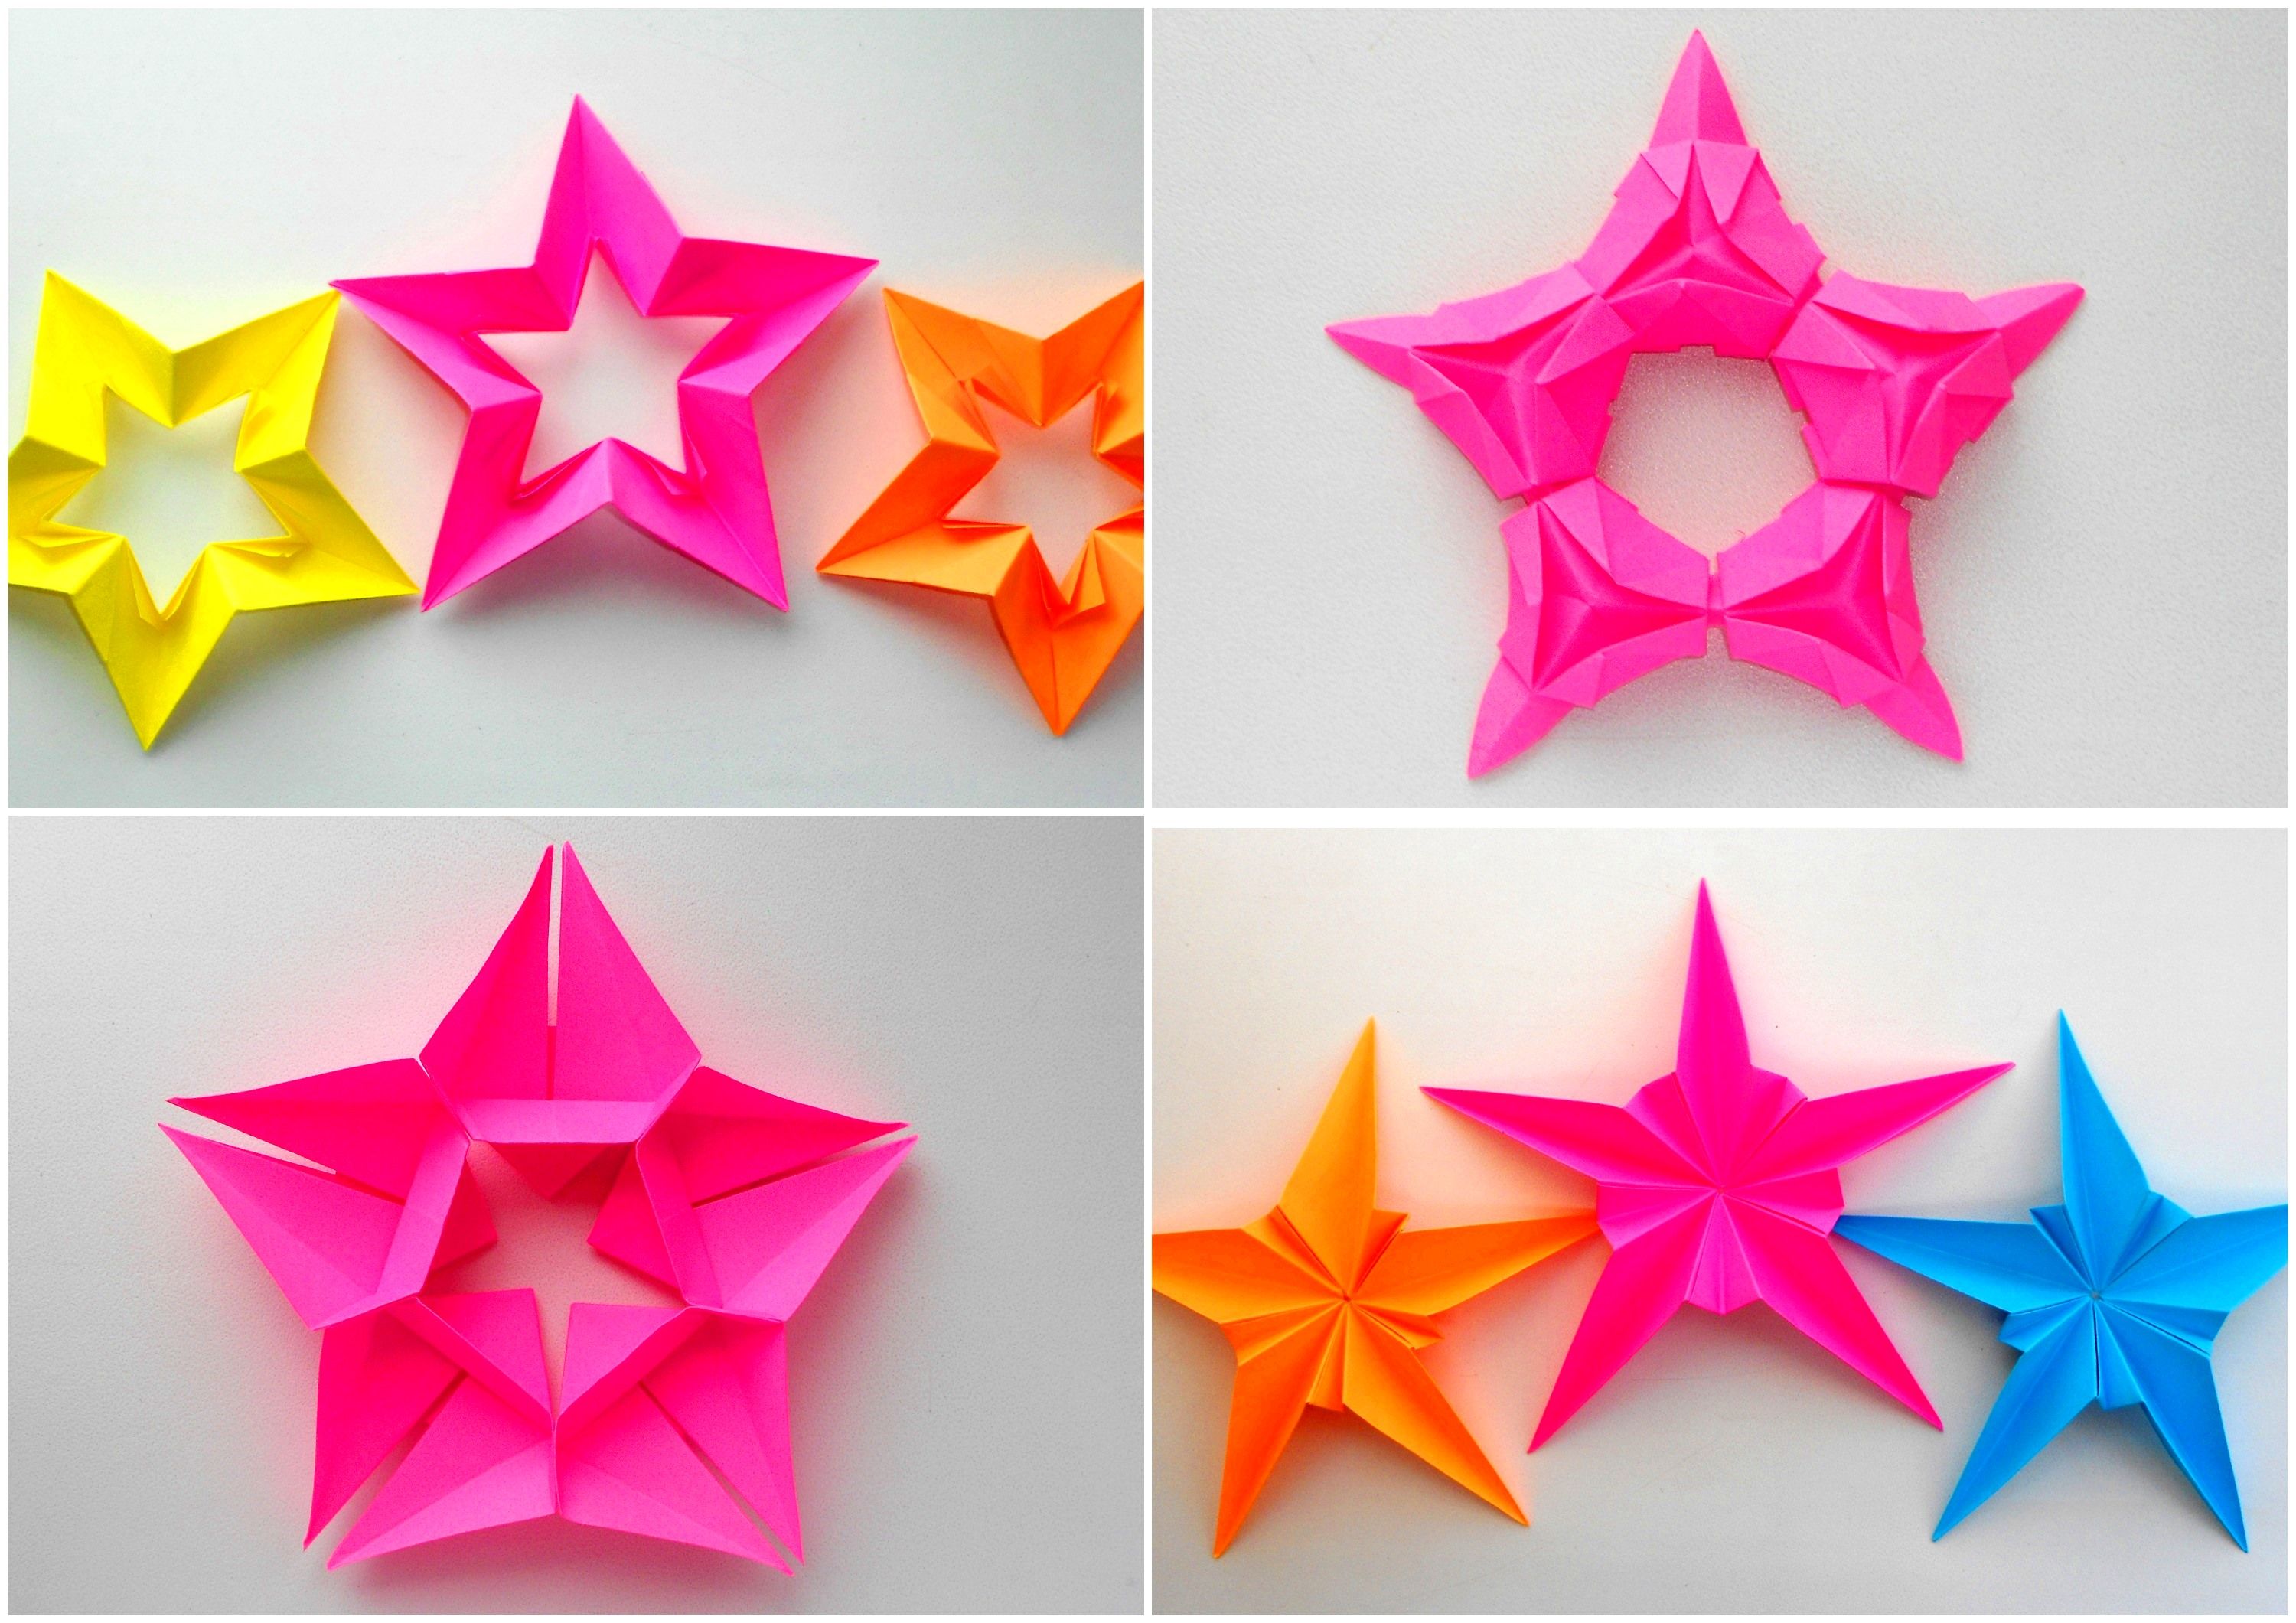 Как сделать объёмную звезду из бумаги и картона своими руками. шаблоны и схема для объемной звезды своими руками. как сделать объемную звезду в технике оригами. как сделать объемную звезду своими руками из бумаги и картона: схемы, шаблоны, оригами